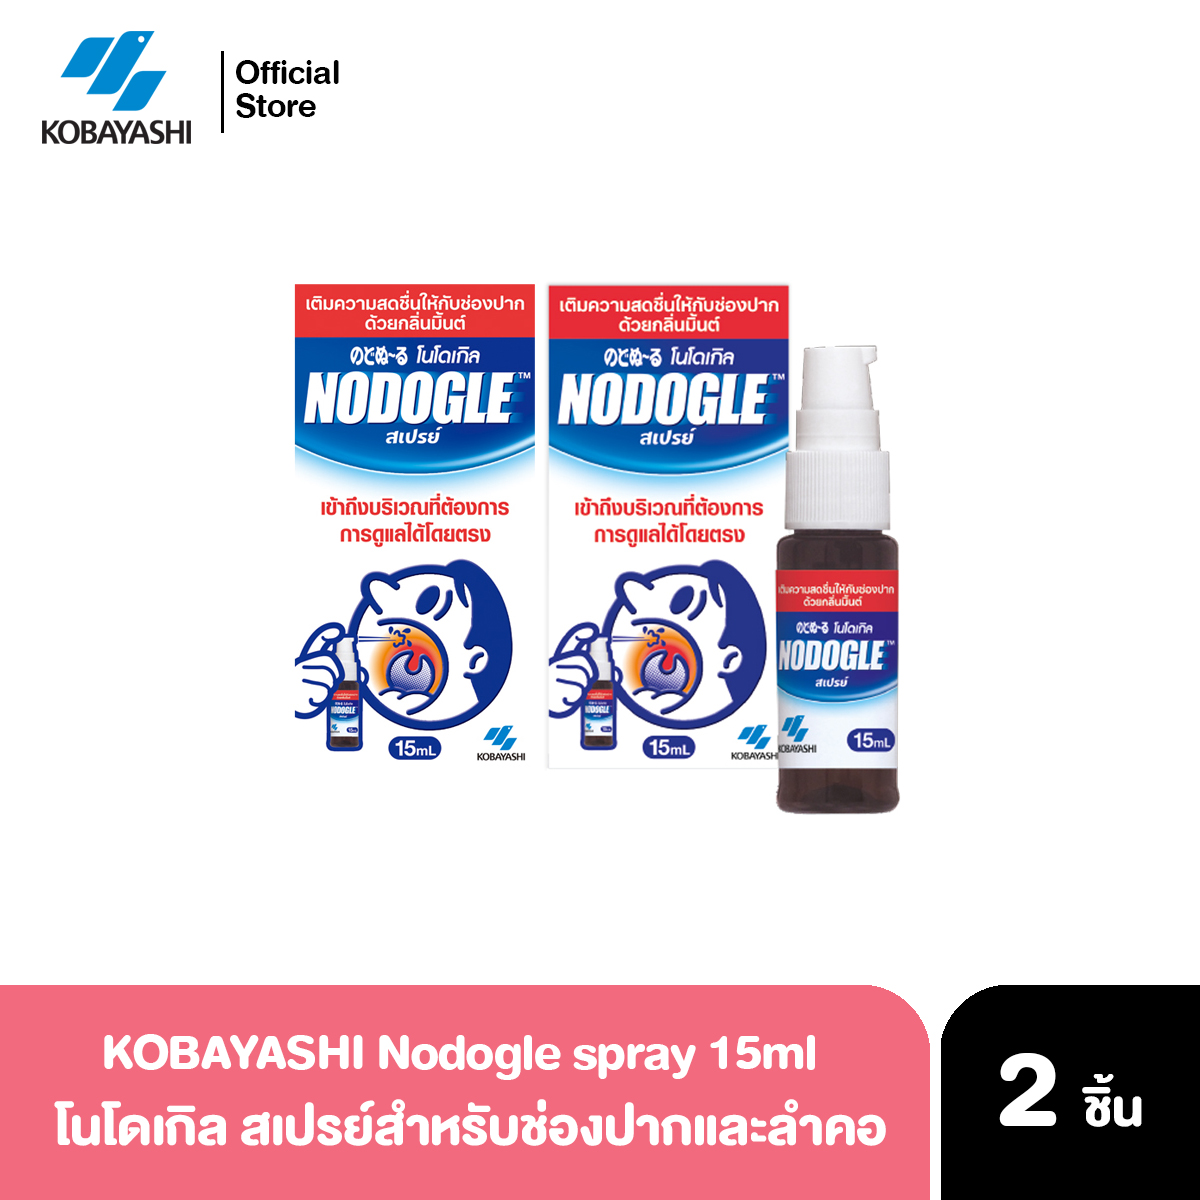 Kobayashi Nodogle Mouth Spray 15ml x 2ชิ้น สเปรย์พ่นการเจ็บคอ ลดการระคายคอ ลดอาการเจ็บคอ จากญี่ปุ่น